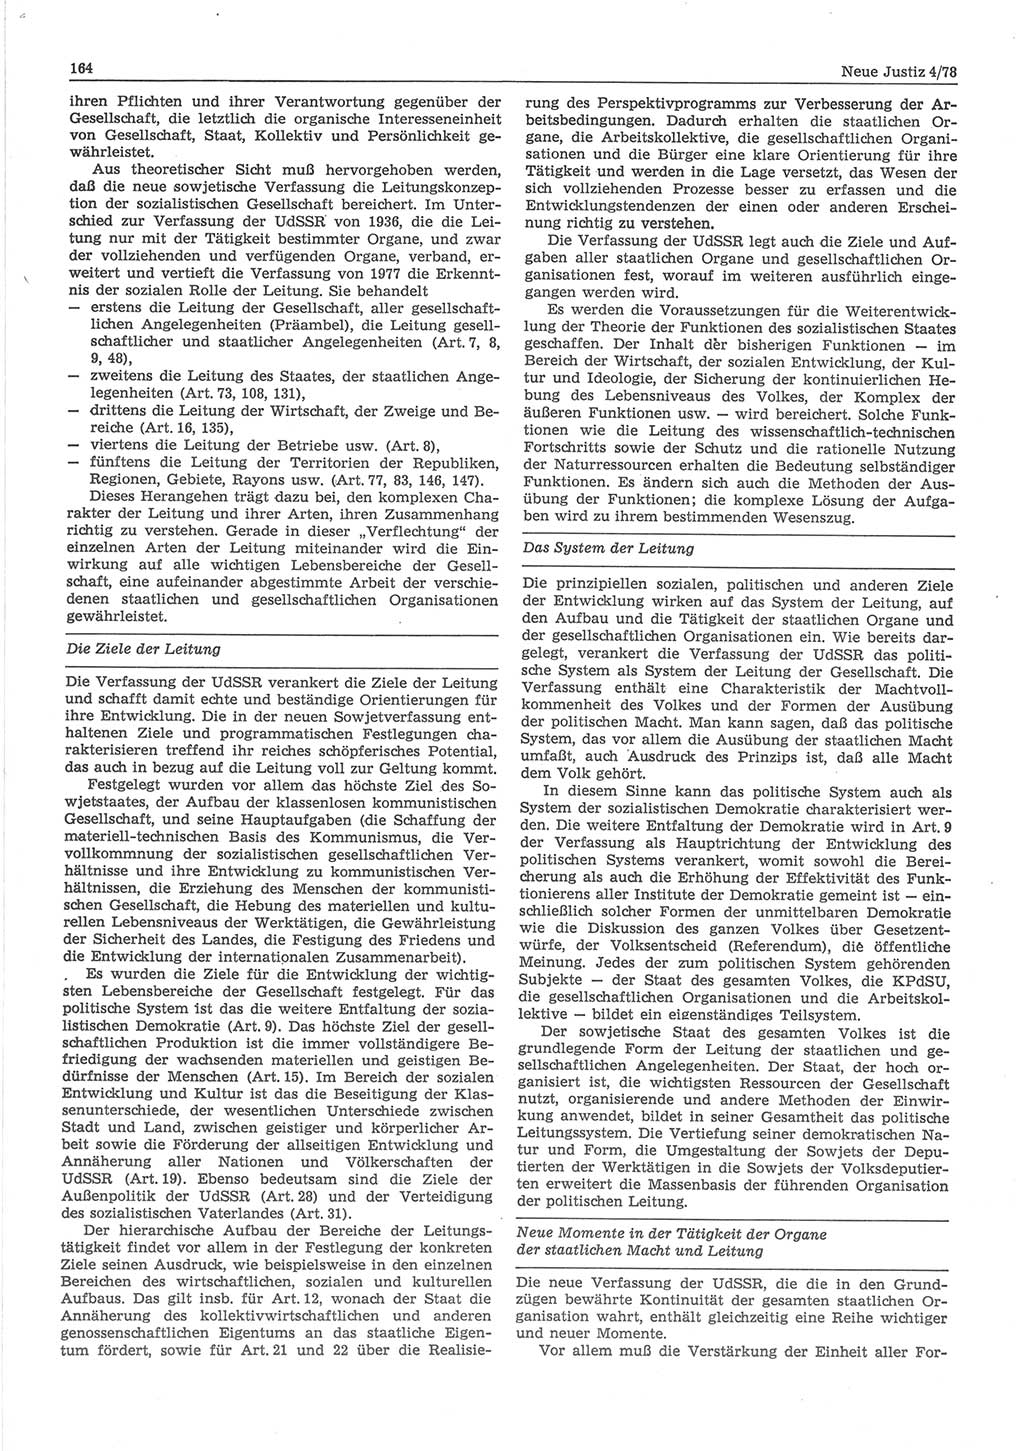 Neue Justiz (NJ), Zeitschrift für sozialistisches Recht und Gesetzlichkeit [Deutsche Demokratische Republik (DDR)], 32. Jahrgang 1978, Seite 164 (NJ DDR 1978, S. 164)